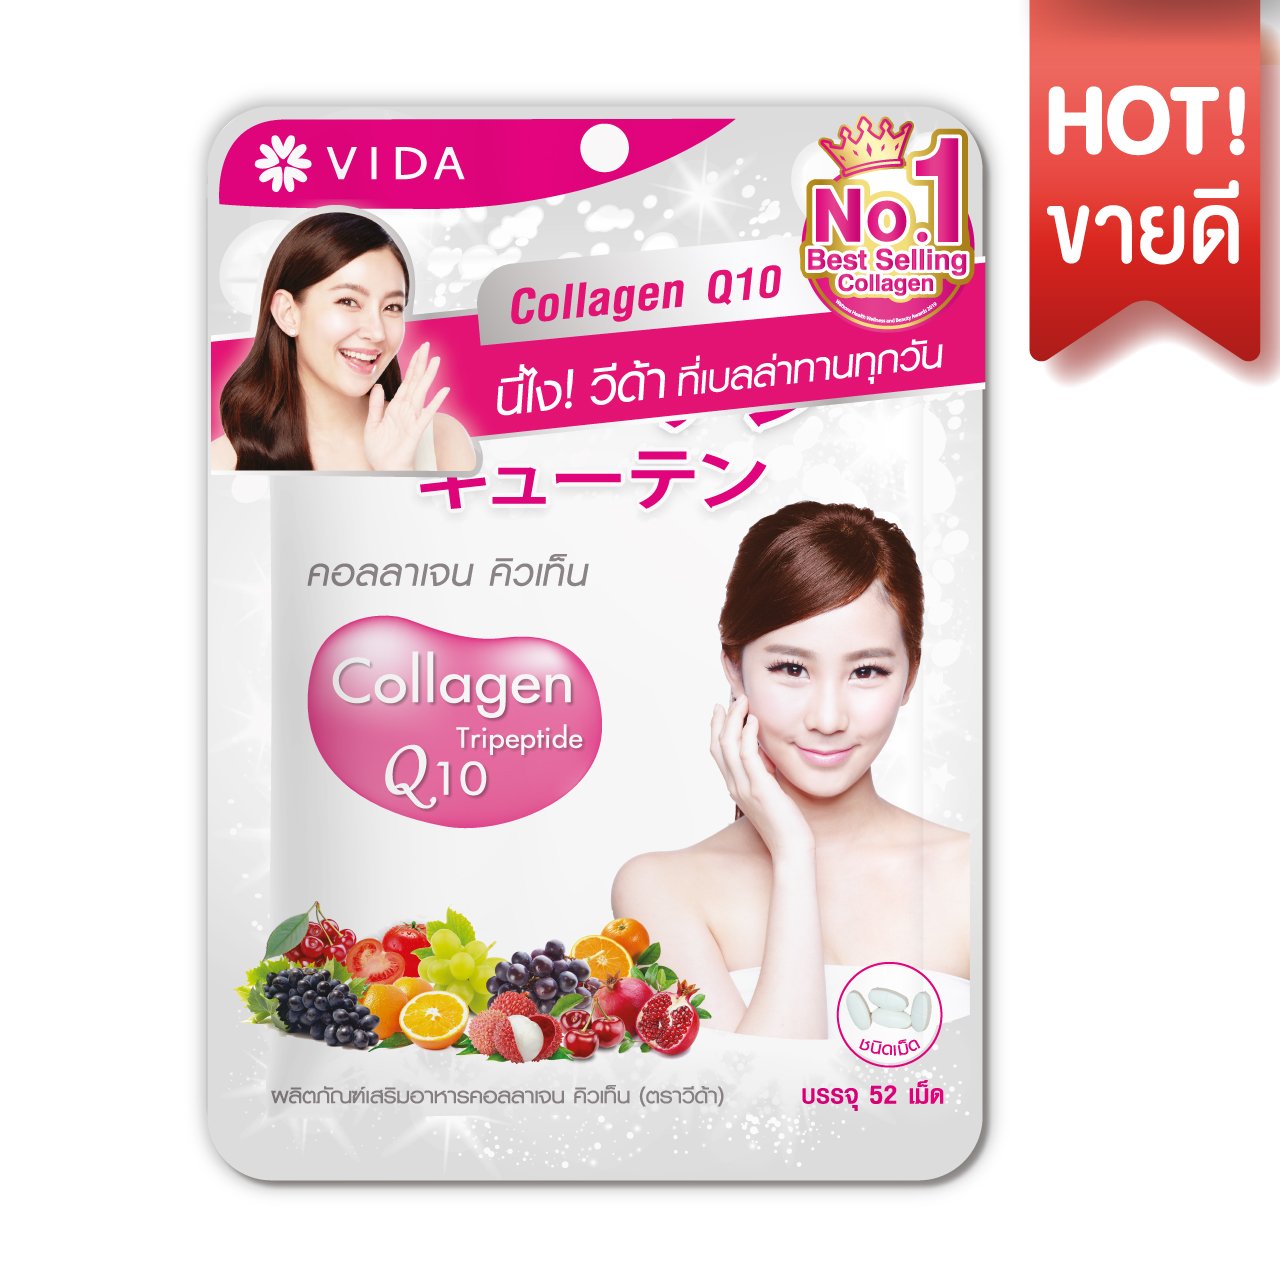 วีด้า คอลลาเจน คิวเท็น (Vida collagen Q10) 52 เม็ด